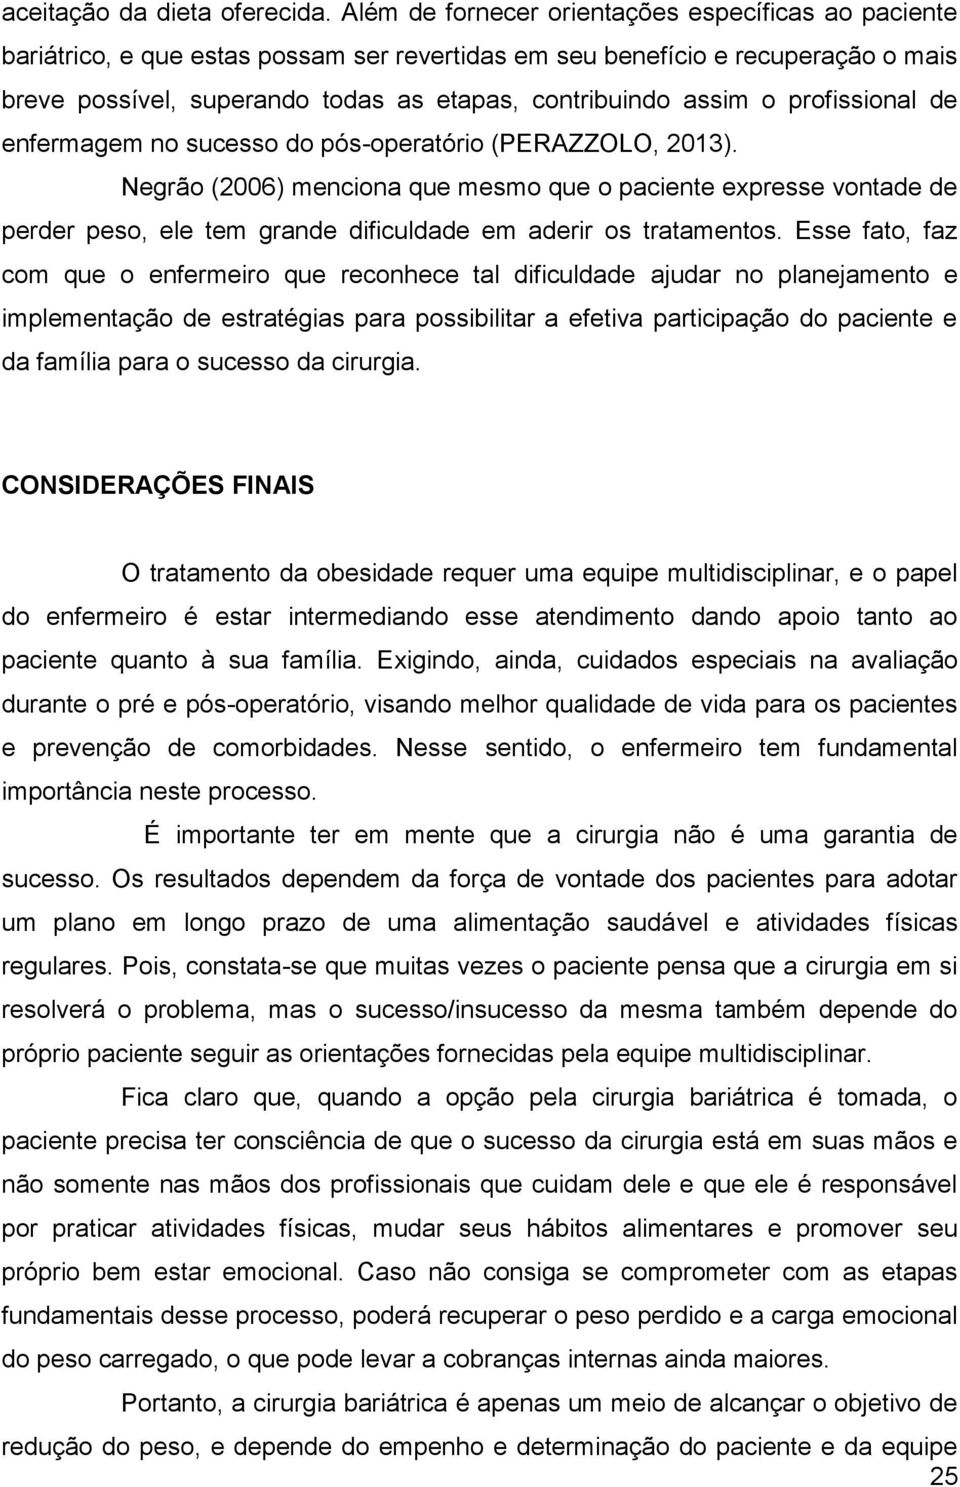 o profissional de enfermagem no sucesso do pós-operatório (PERAZZOLO, 2013).